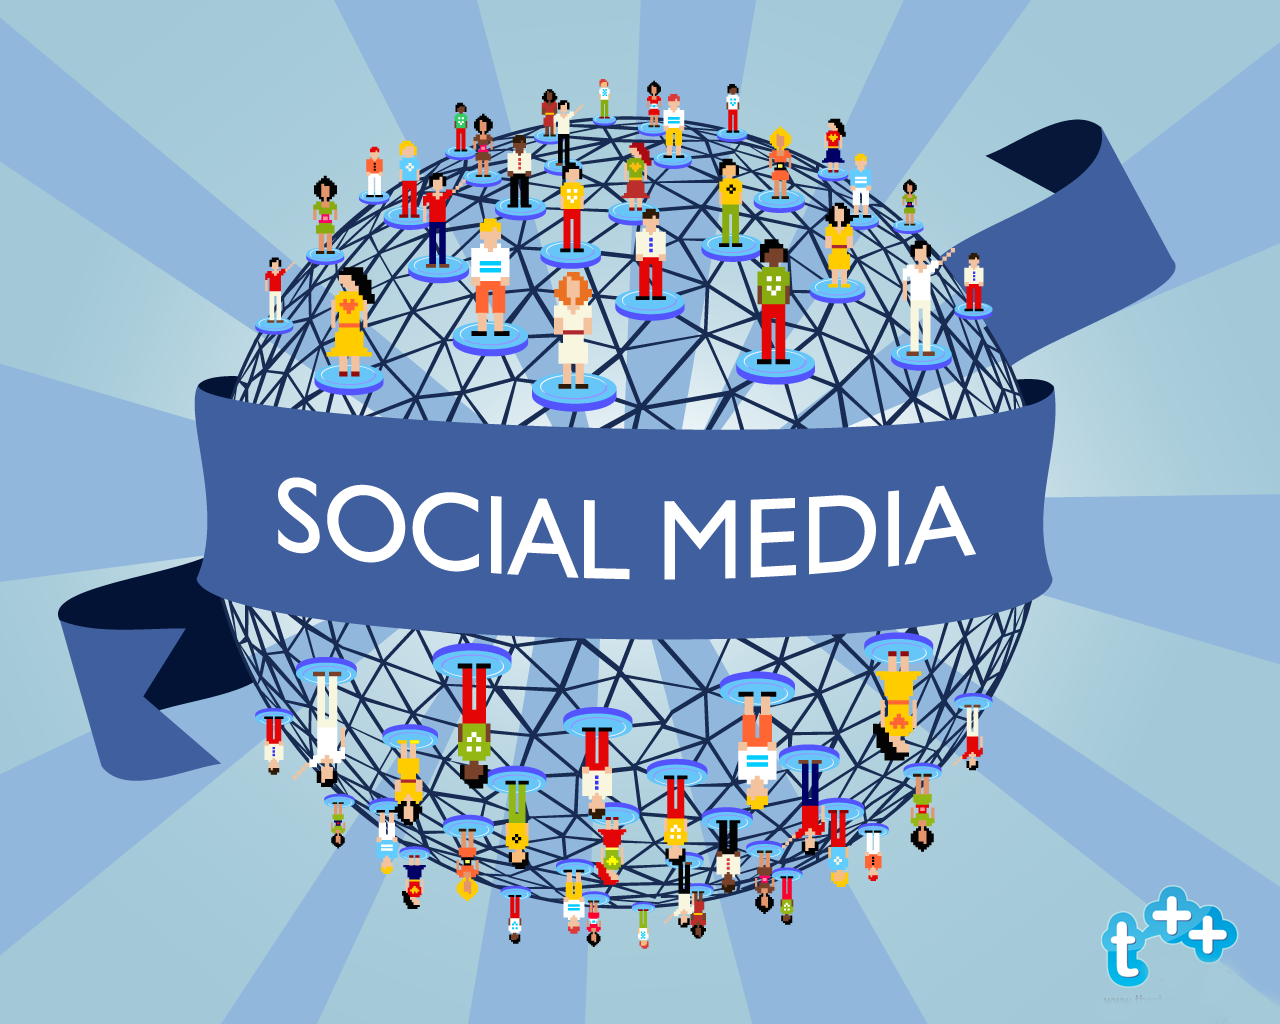 Social media hd wallpapers social media munity social media trends social media strategies